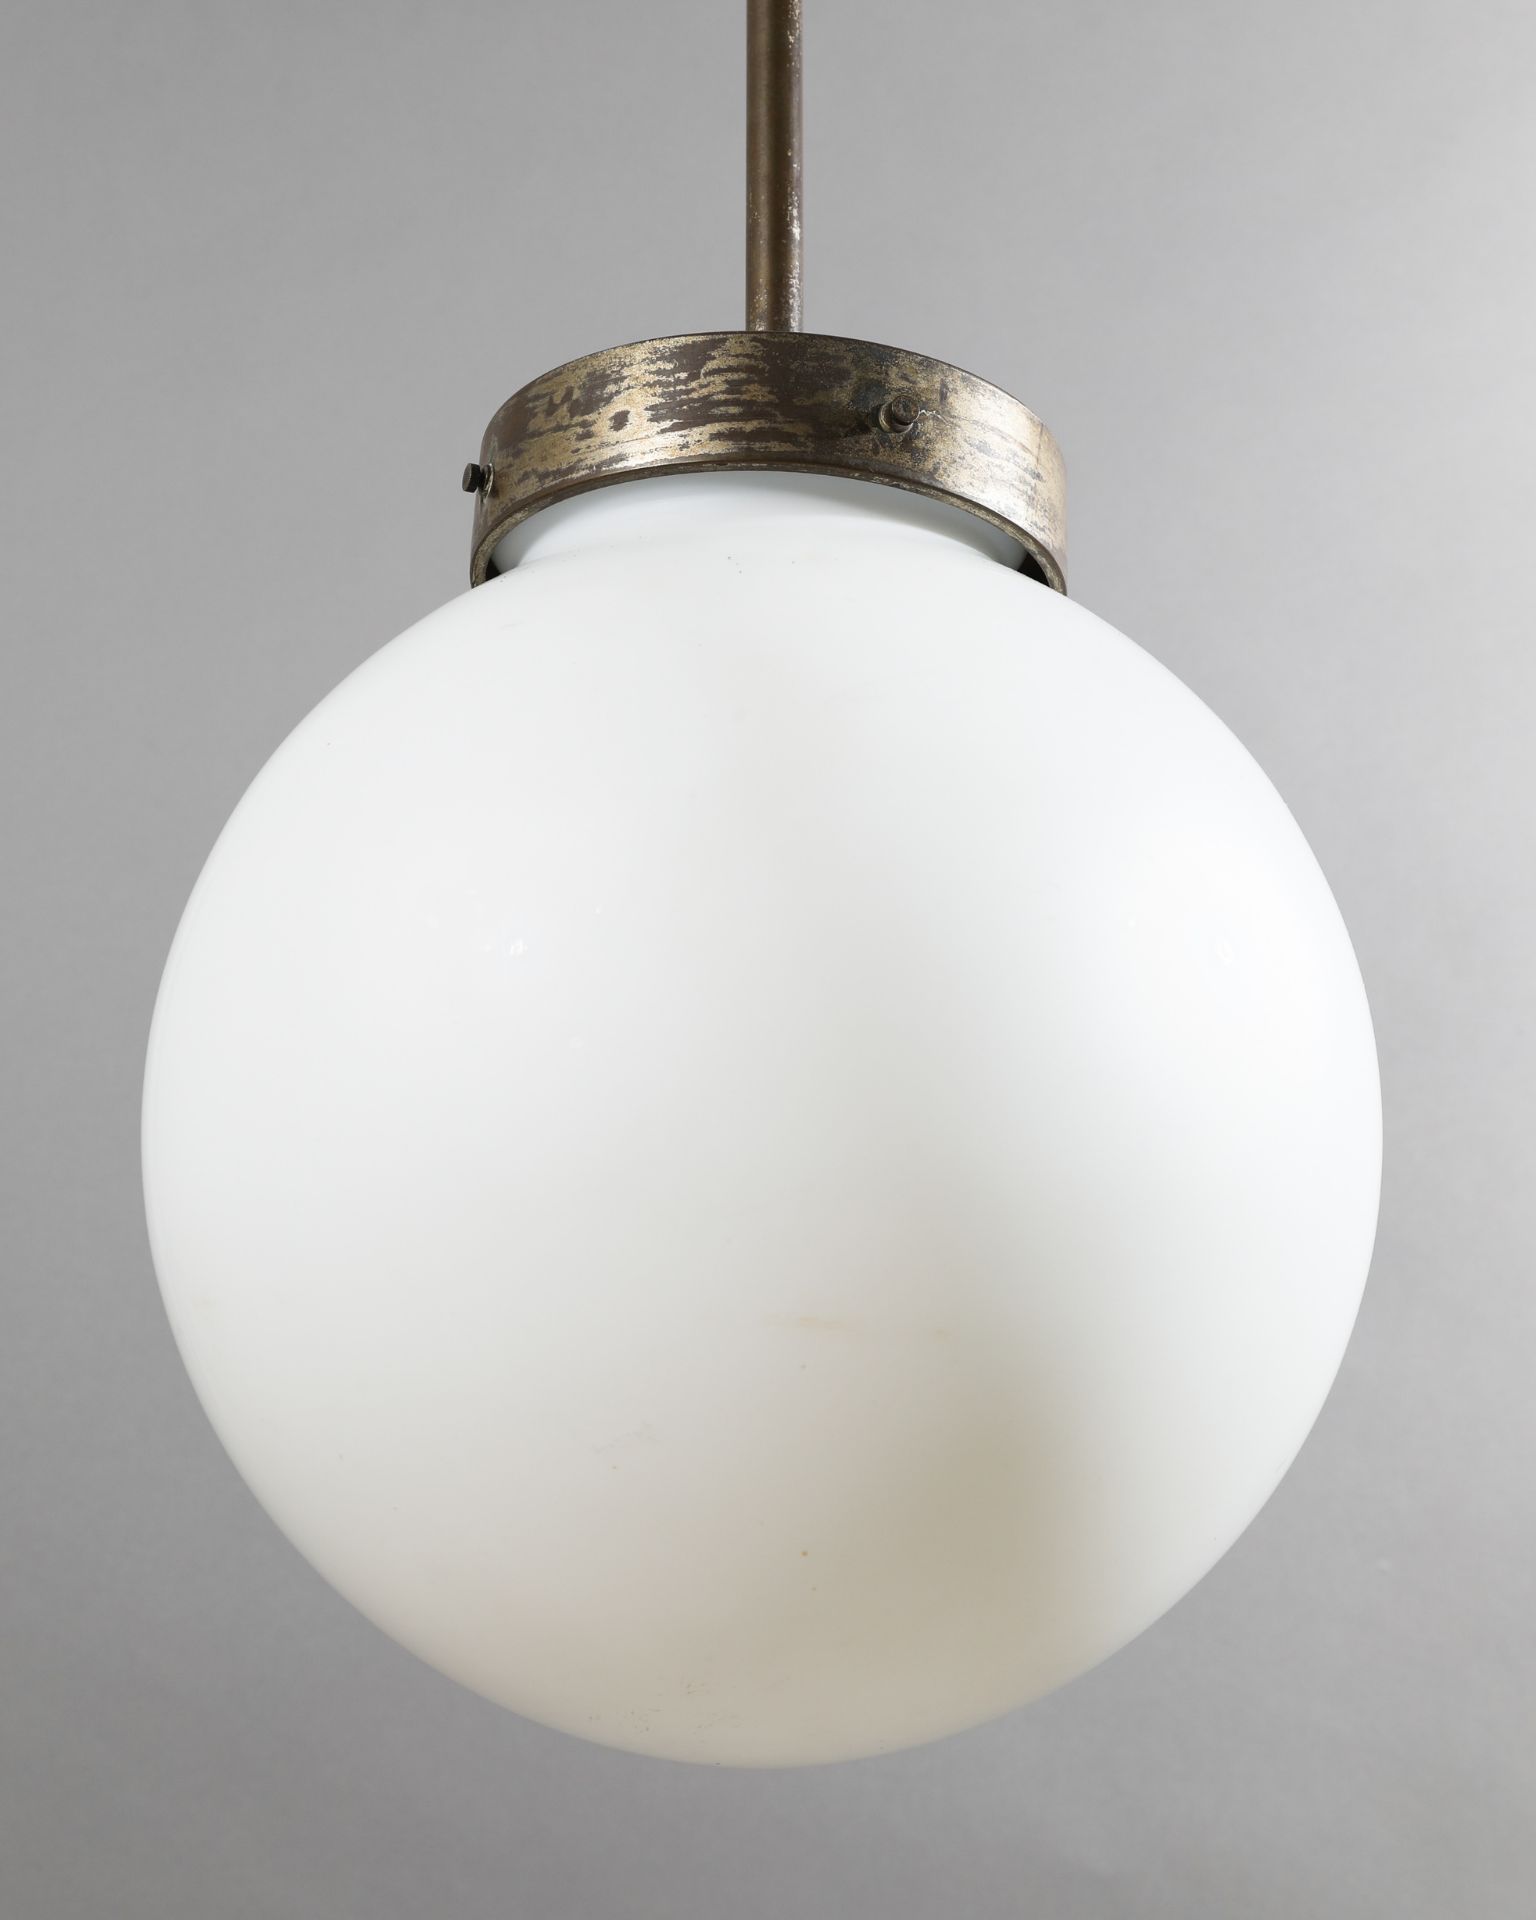 Marianne Brandt, Schwintzer & Gräff, spherical Pendant Lamp No 5491 - Image 3 of 5